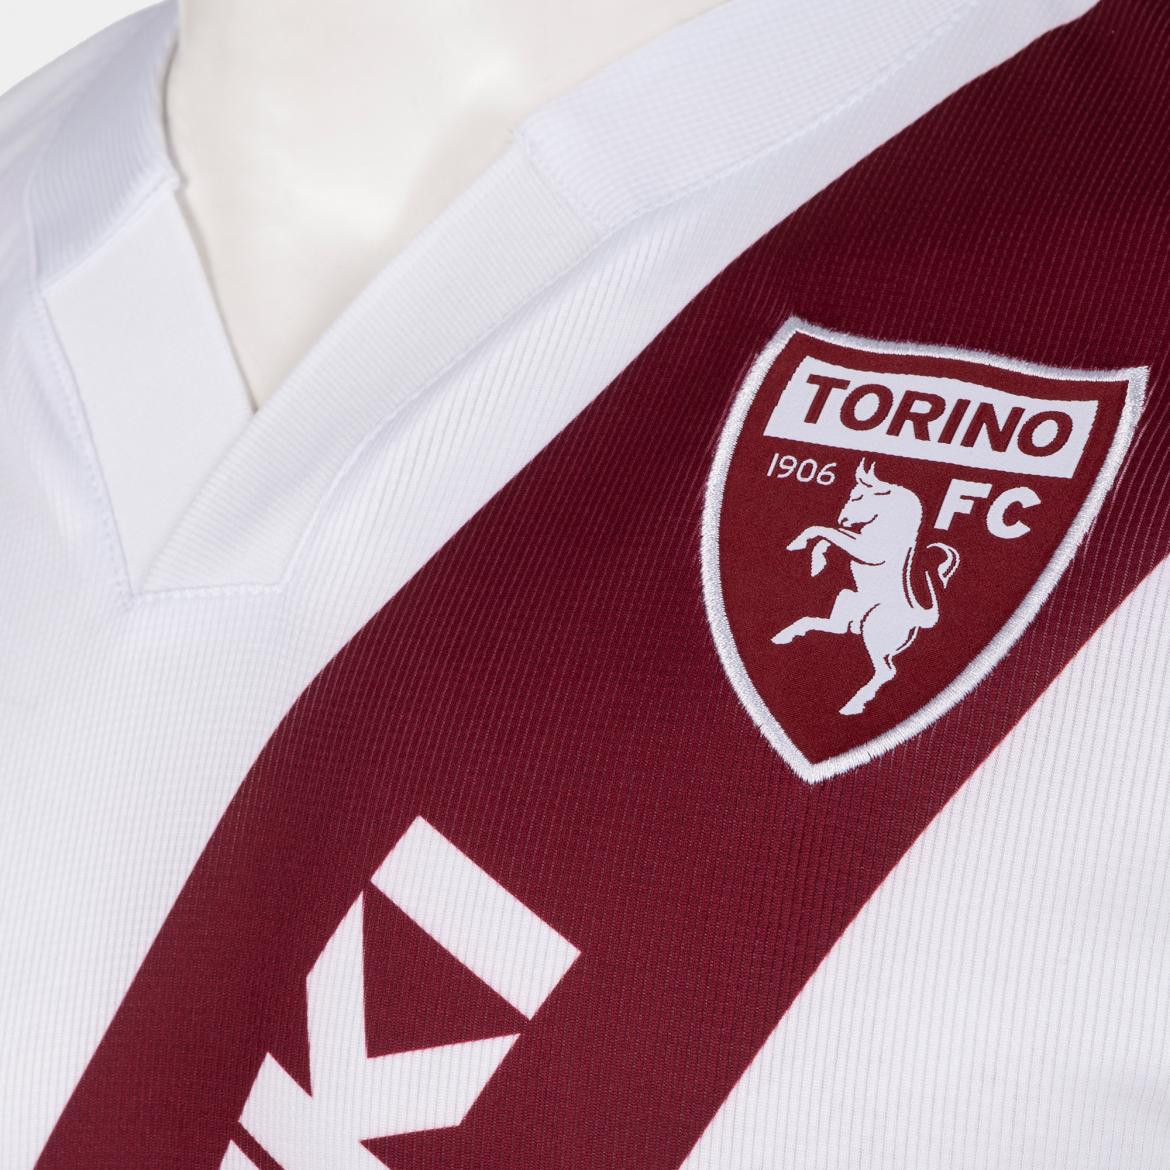 Camiseta del Torino con homenaje a River